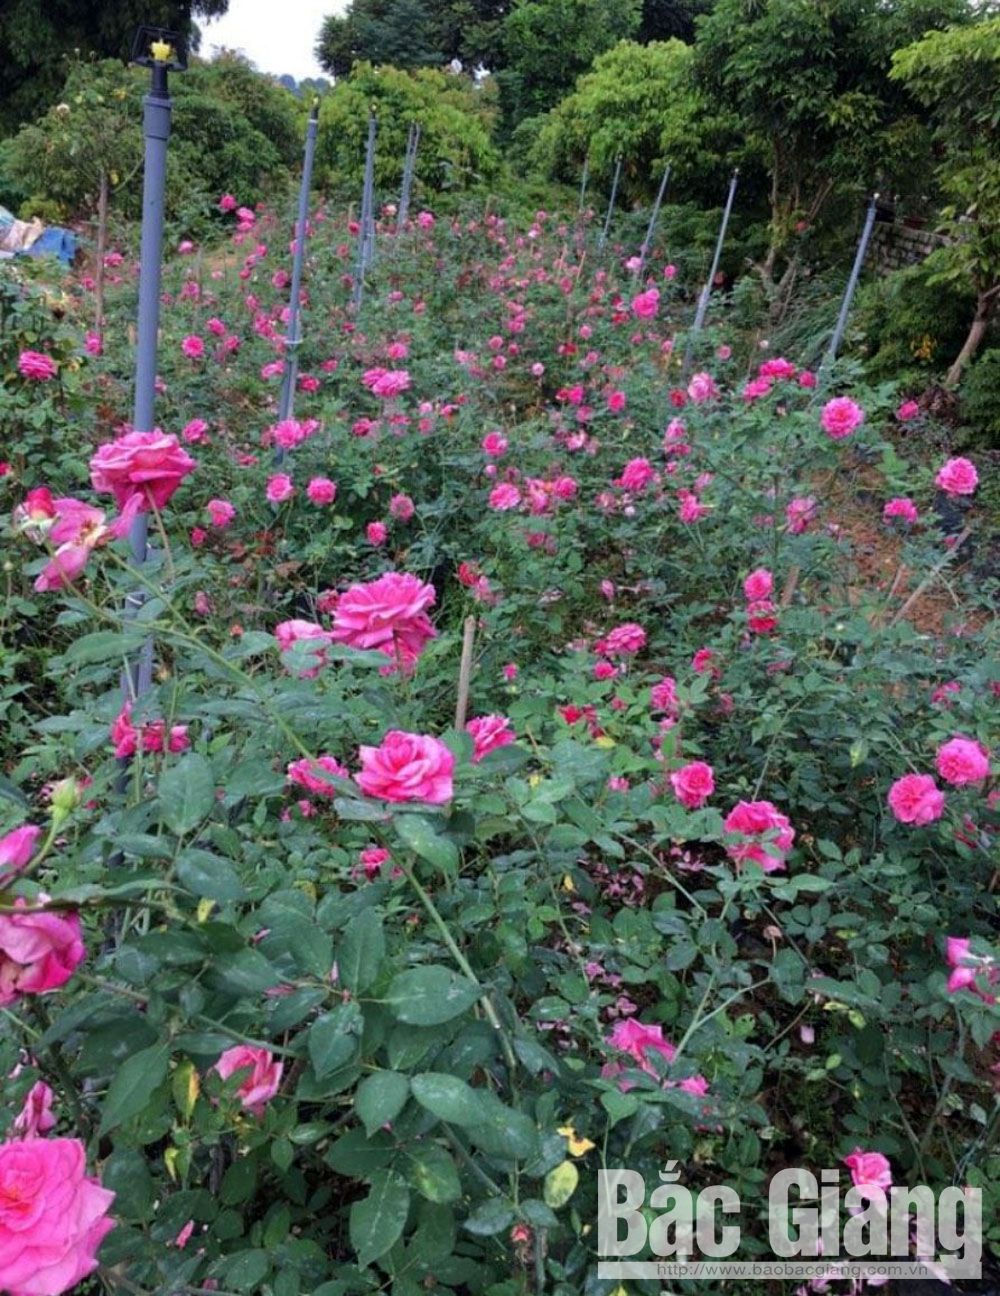 Trồng hoa hồng thành một vườn, vô số giống hoa hồng lạ vạn người mê của nông dân Bắc Giang - Ảnh 2.